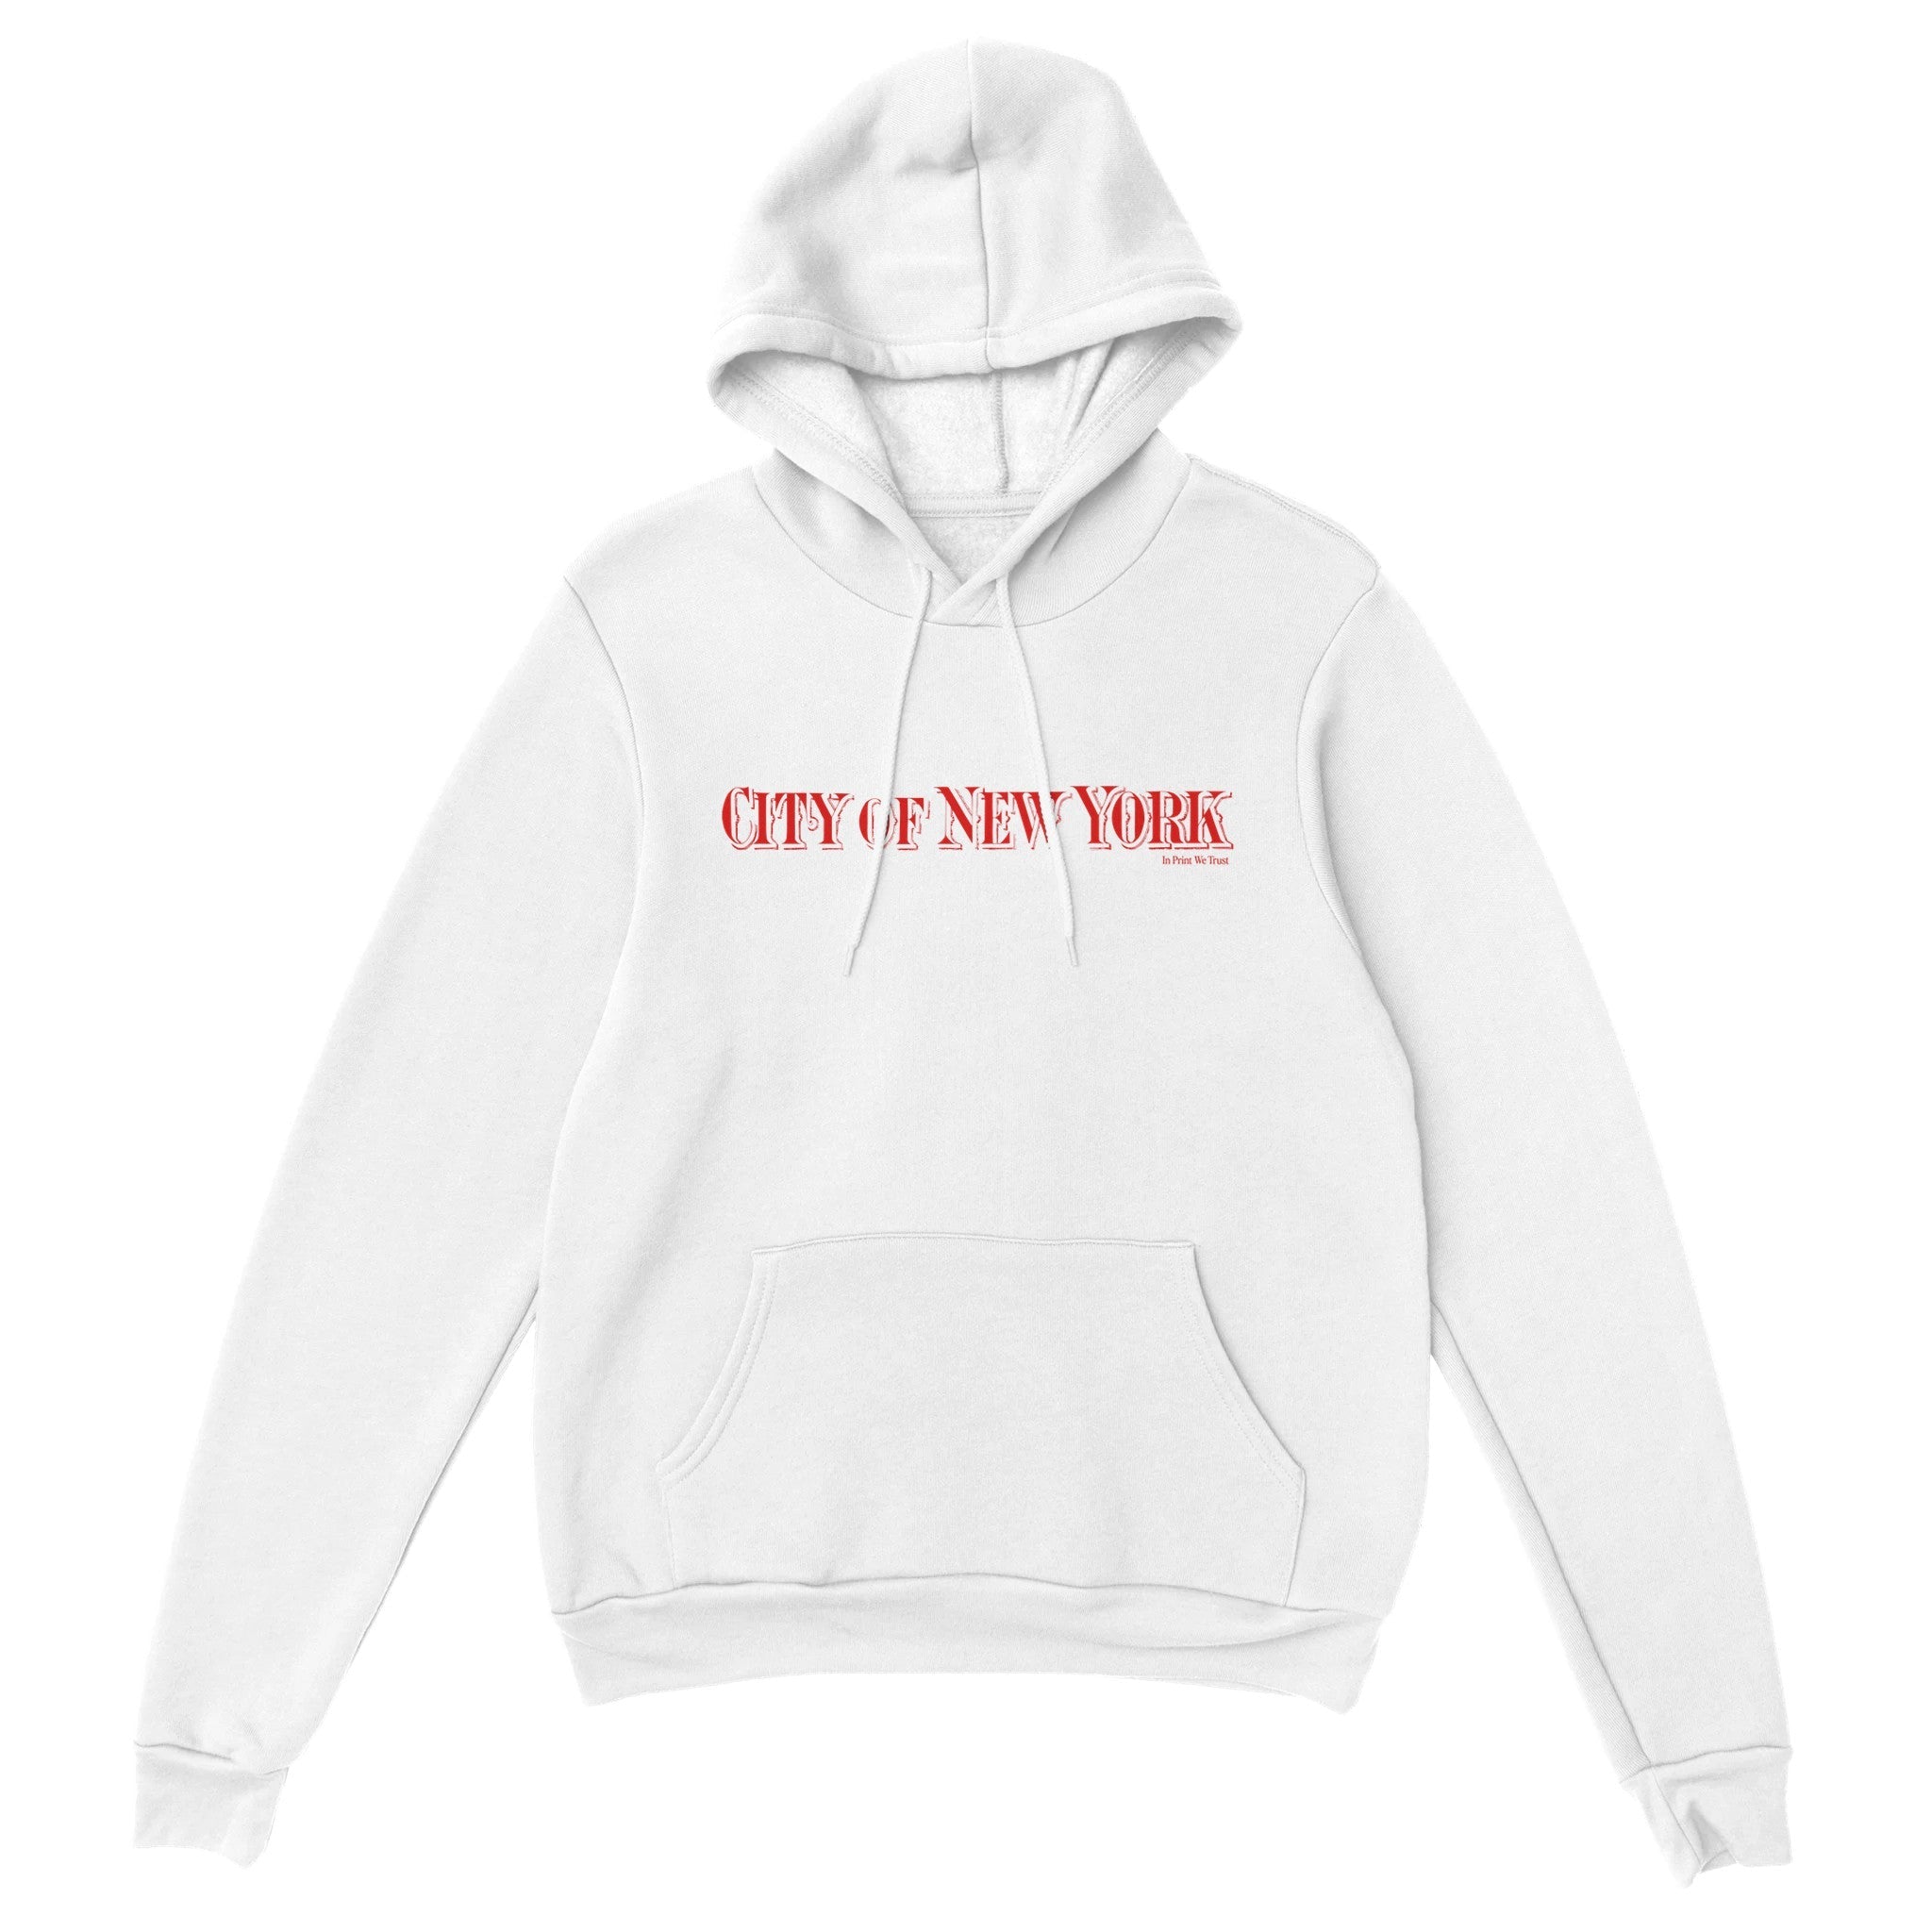 'City of New York' hoodie - In Print We Trust